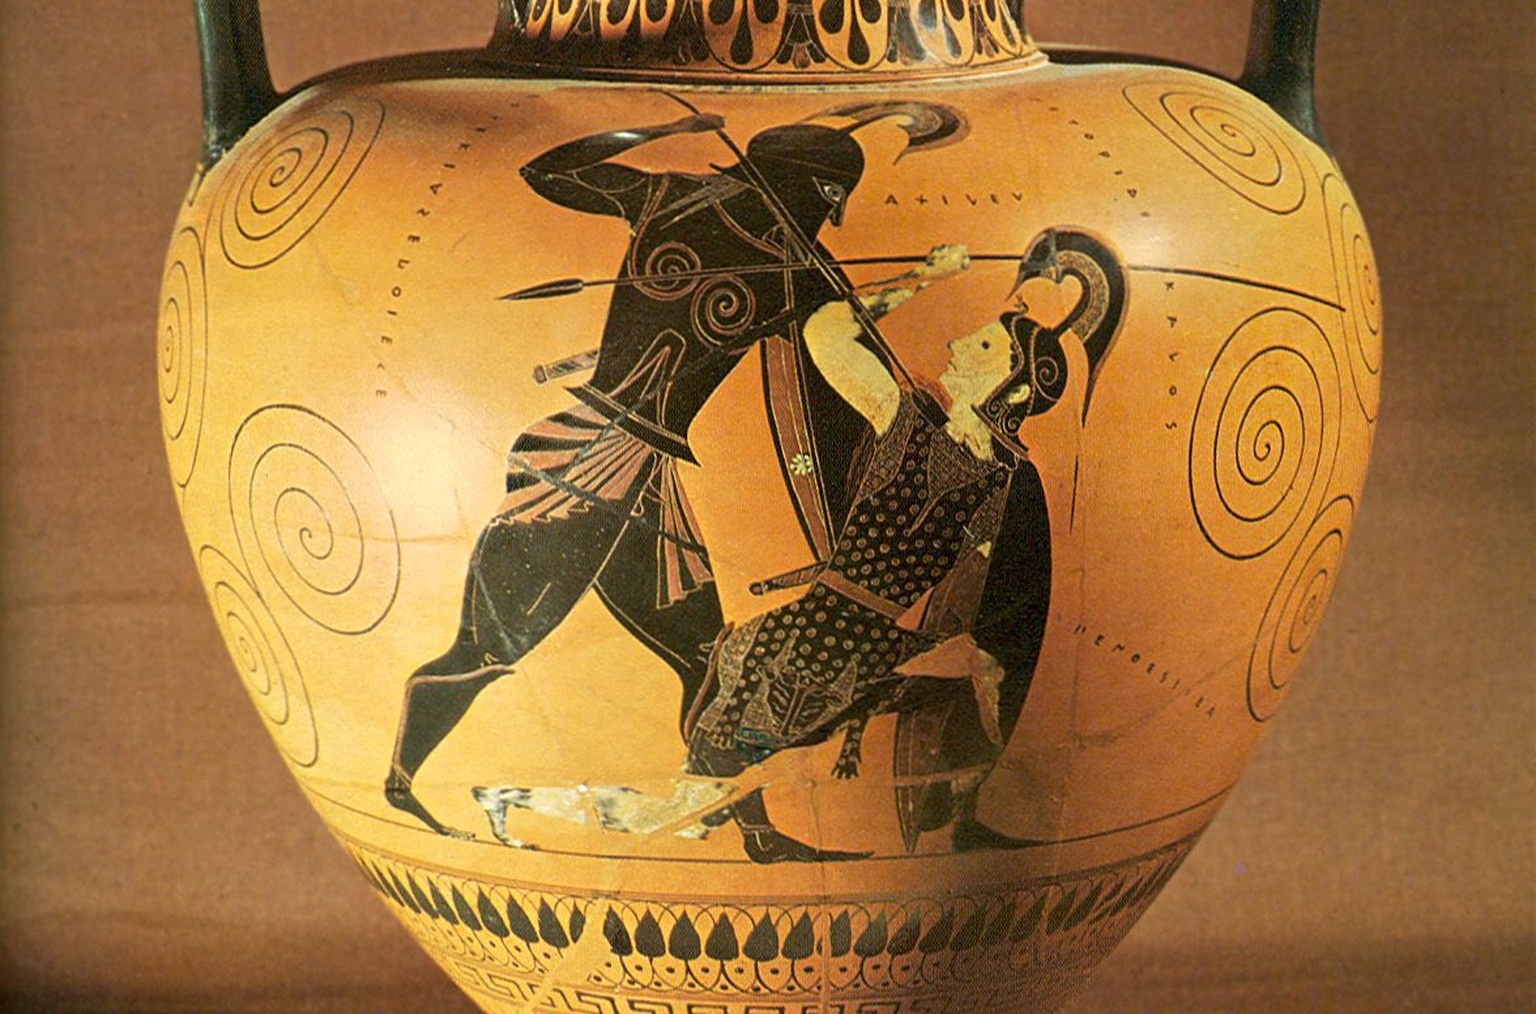 Vase aus dem 5. Jh. v. Chr.: Achilleus tötet Penthesilea – man beachte, dass sie sich dabei in die Augen schauen. Der Moment, in dem sich der Held in seine Gegnerin verliebt.